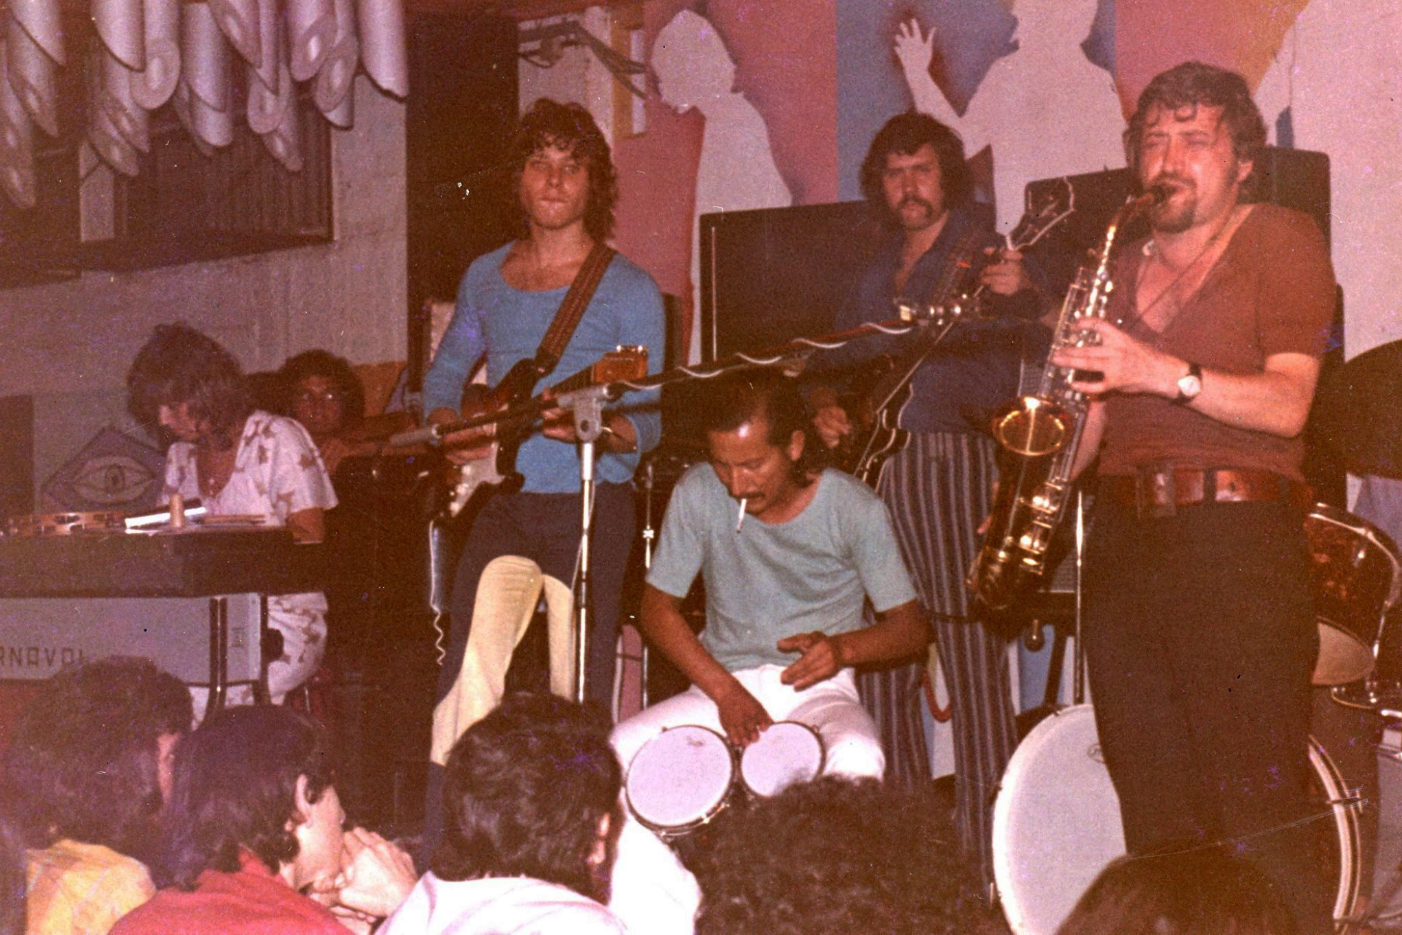 עם הפלטינה - בברברים 1972. משמאל: אלונה טוראל, יצחק קלפטר- בס, קרלוס אלברטו- בונגוס, לב זבגינסקי- בס, רומן קונצמן -חליל,